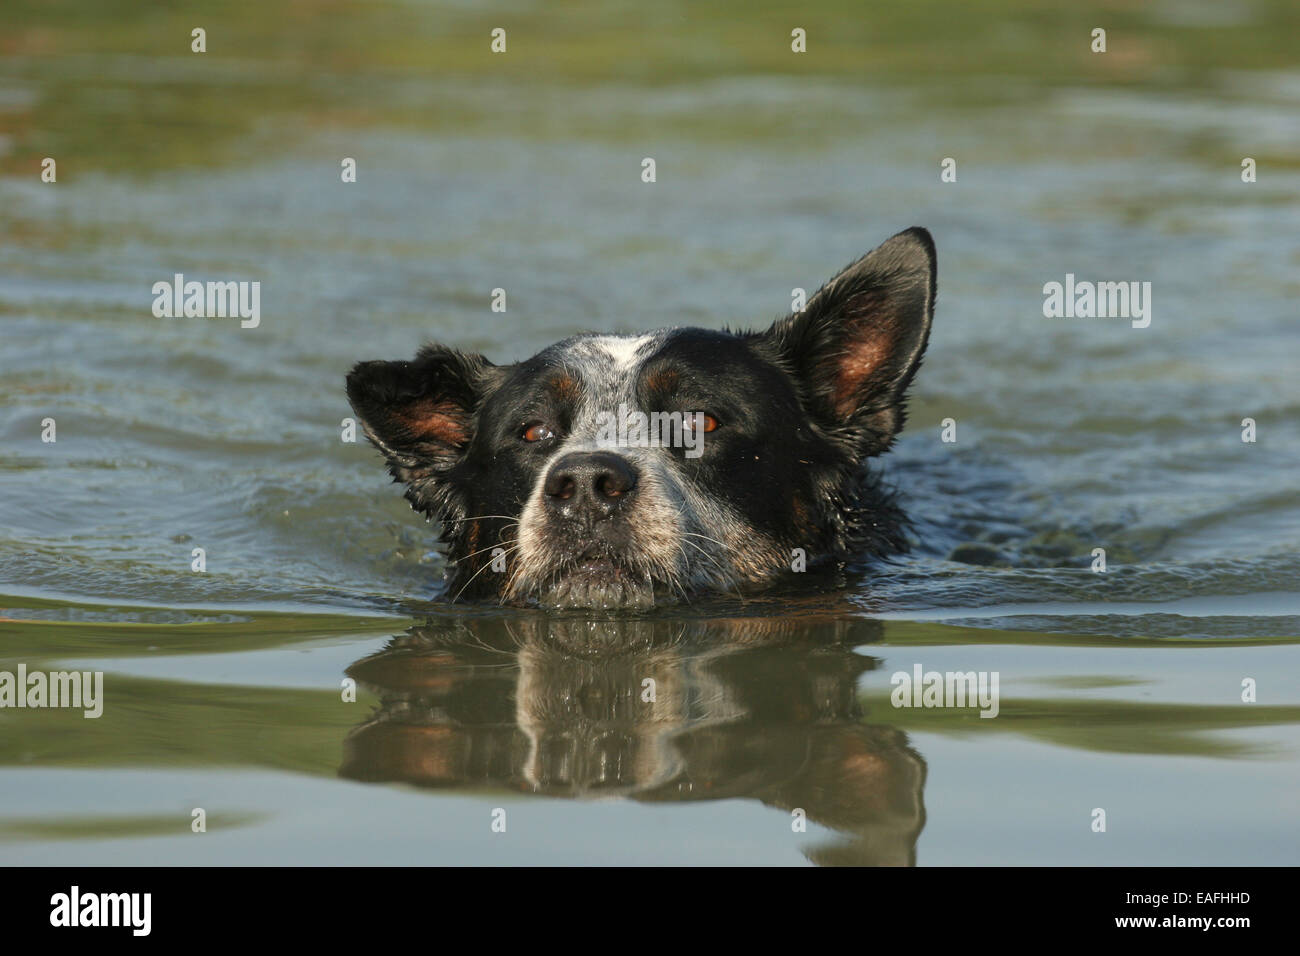 Australian Cattle Dog natation dans l'eau Banque D'Images